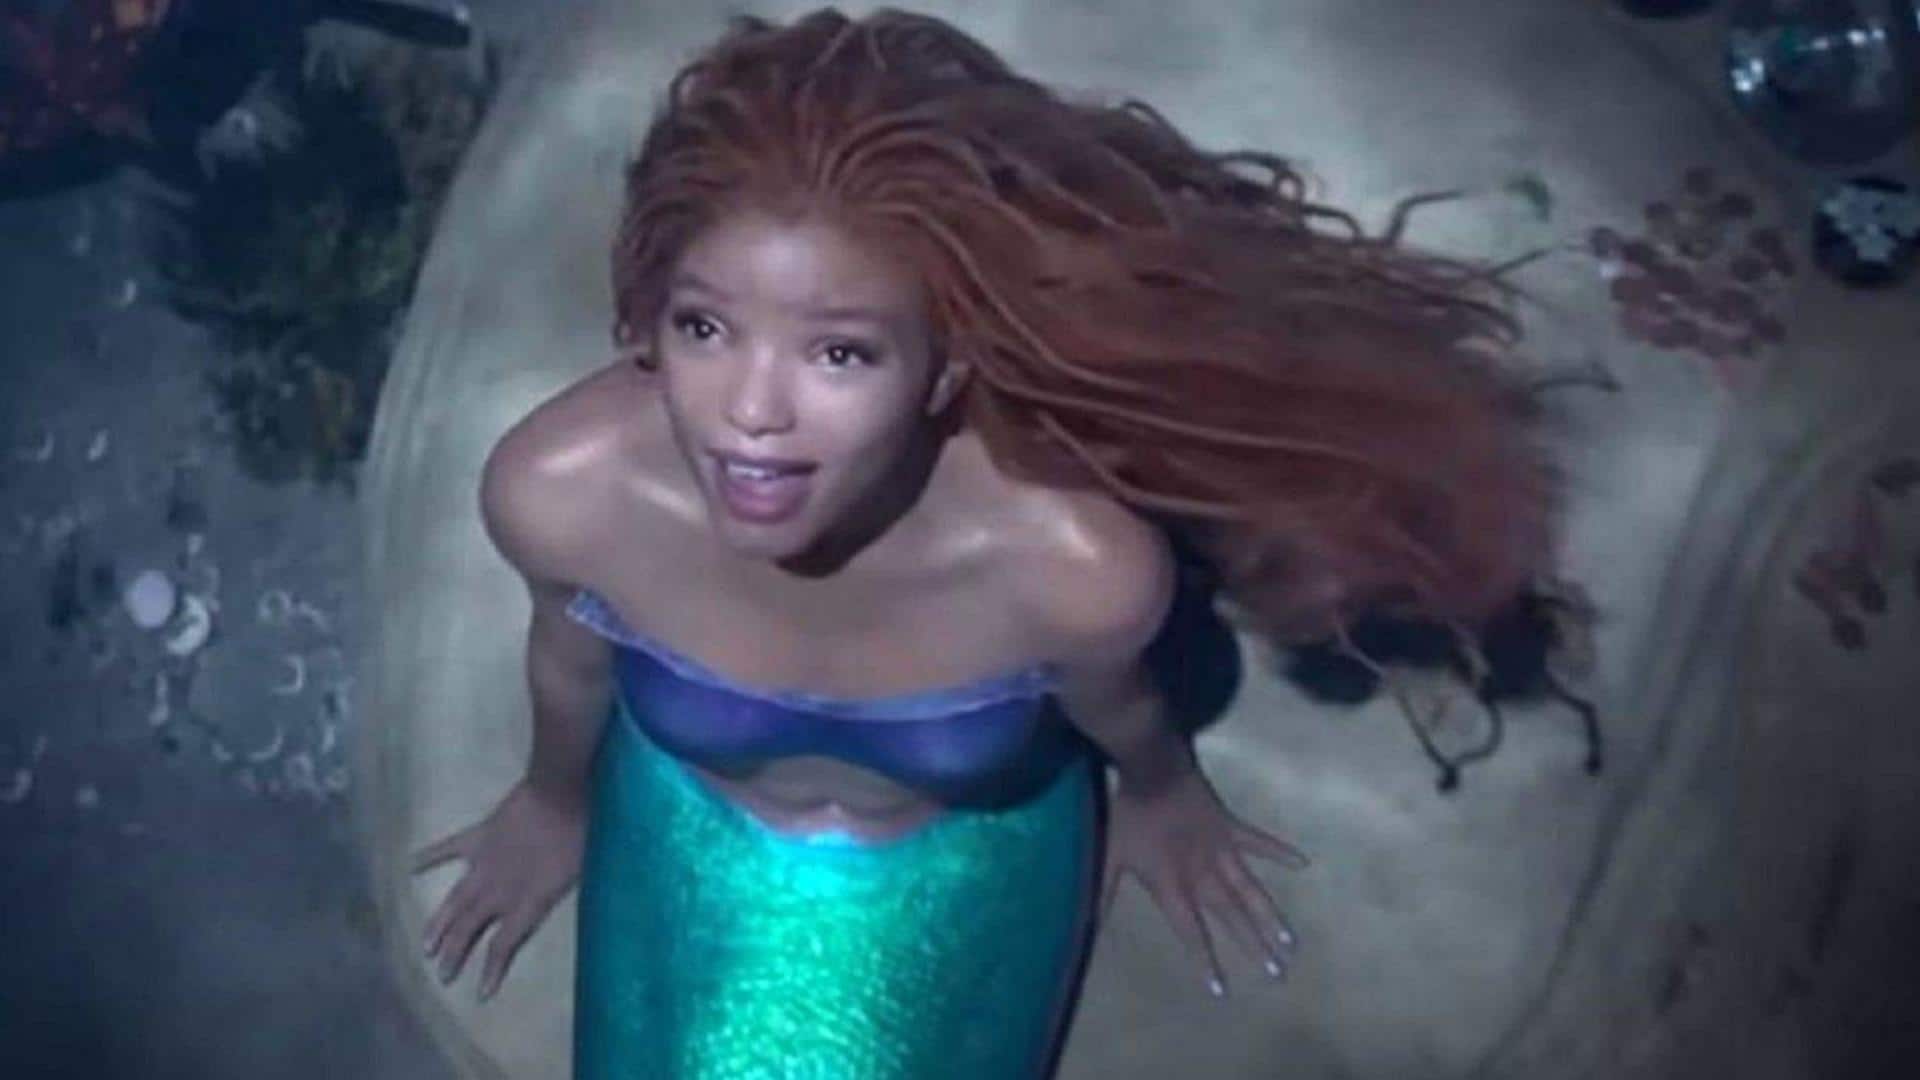 Disney's 'The Little Mermaid' trailer looks promising